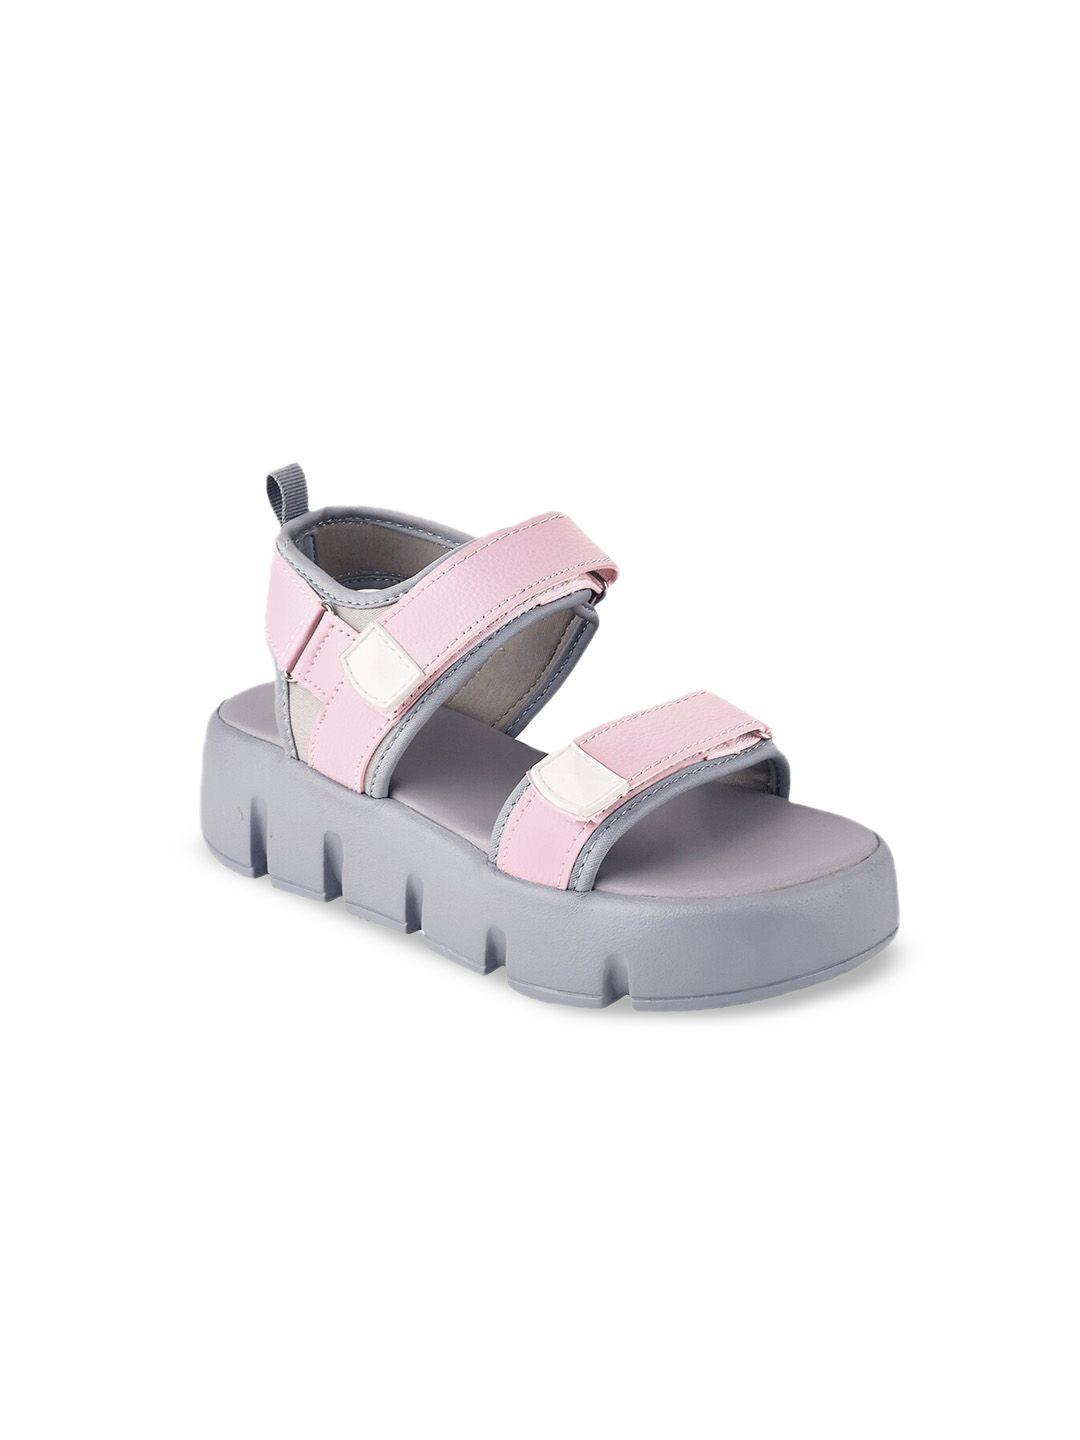 shoetopia girls open toe flatform heels